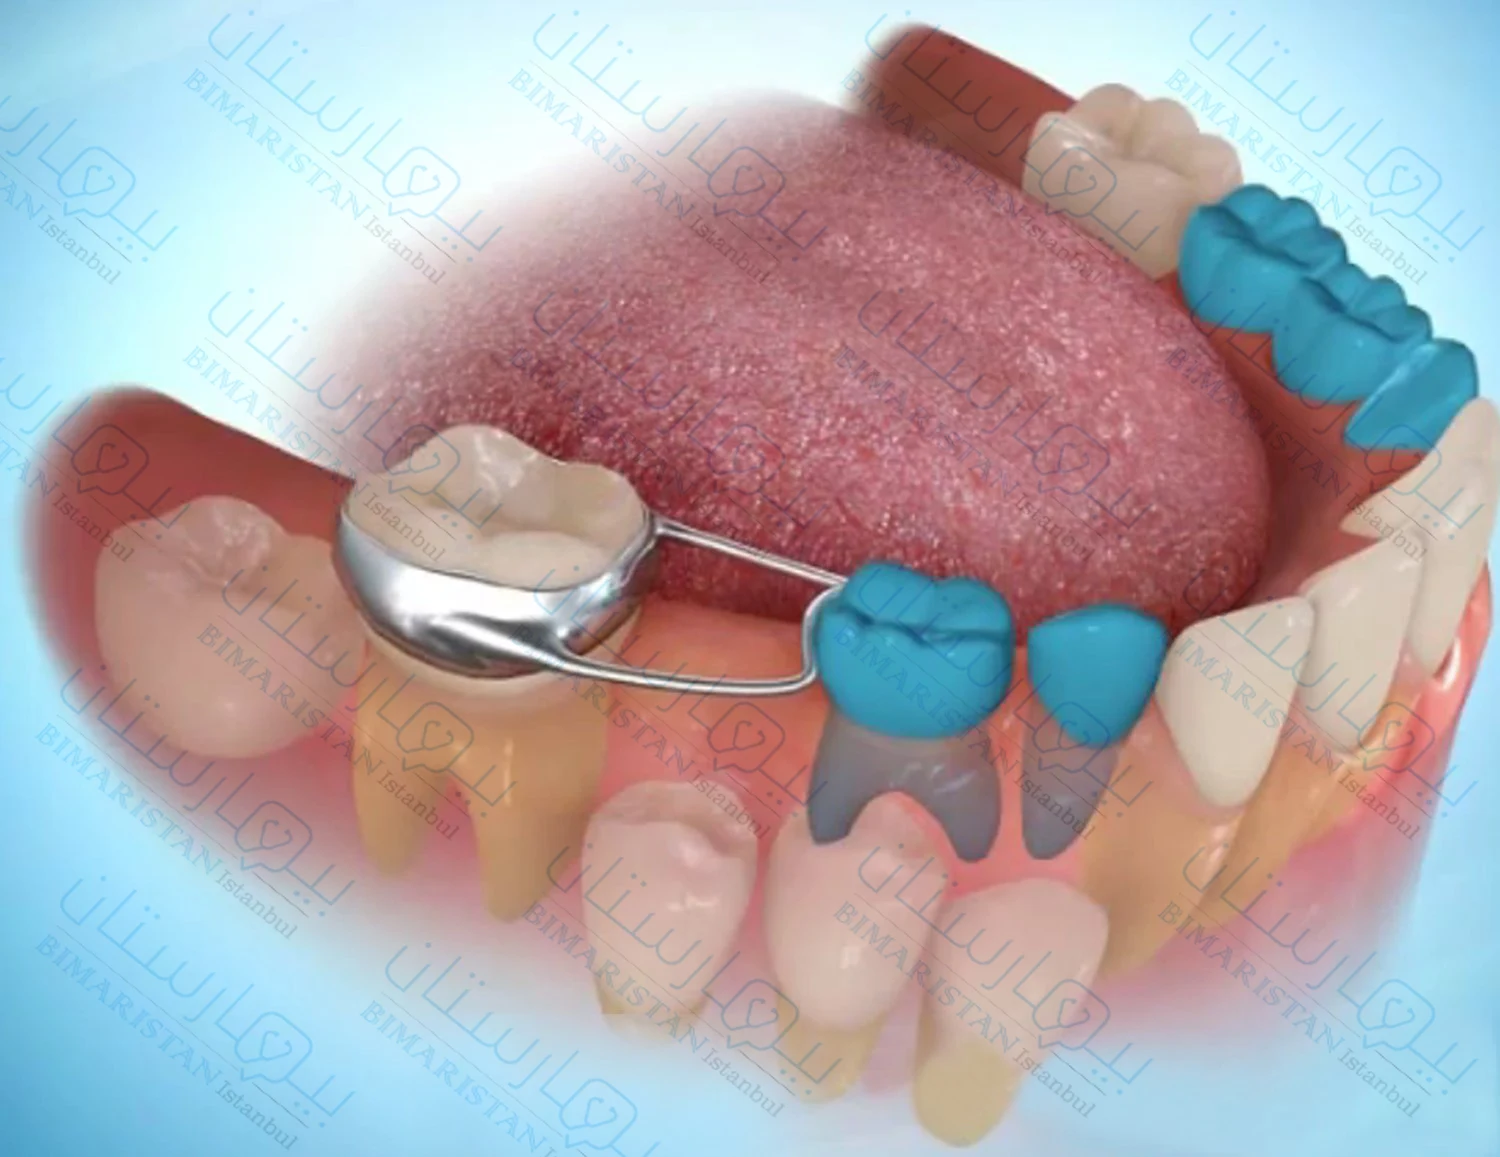 حافظة المسافة لمنع تحرك الأسنان واختلال الإطباق عند الأطفال من إجراءات طب أسنان الأطفال المهمة